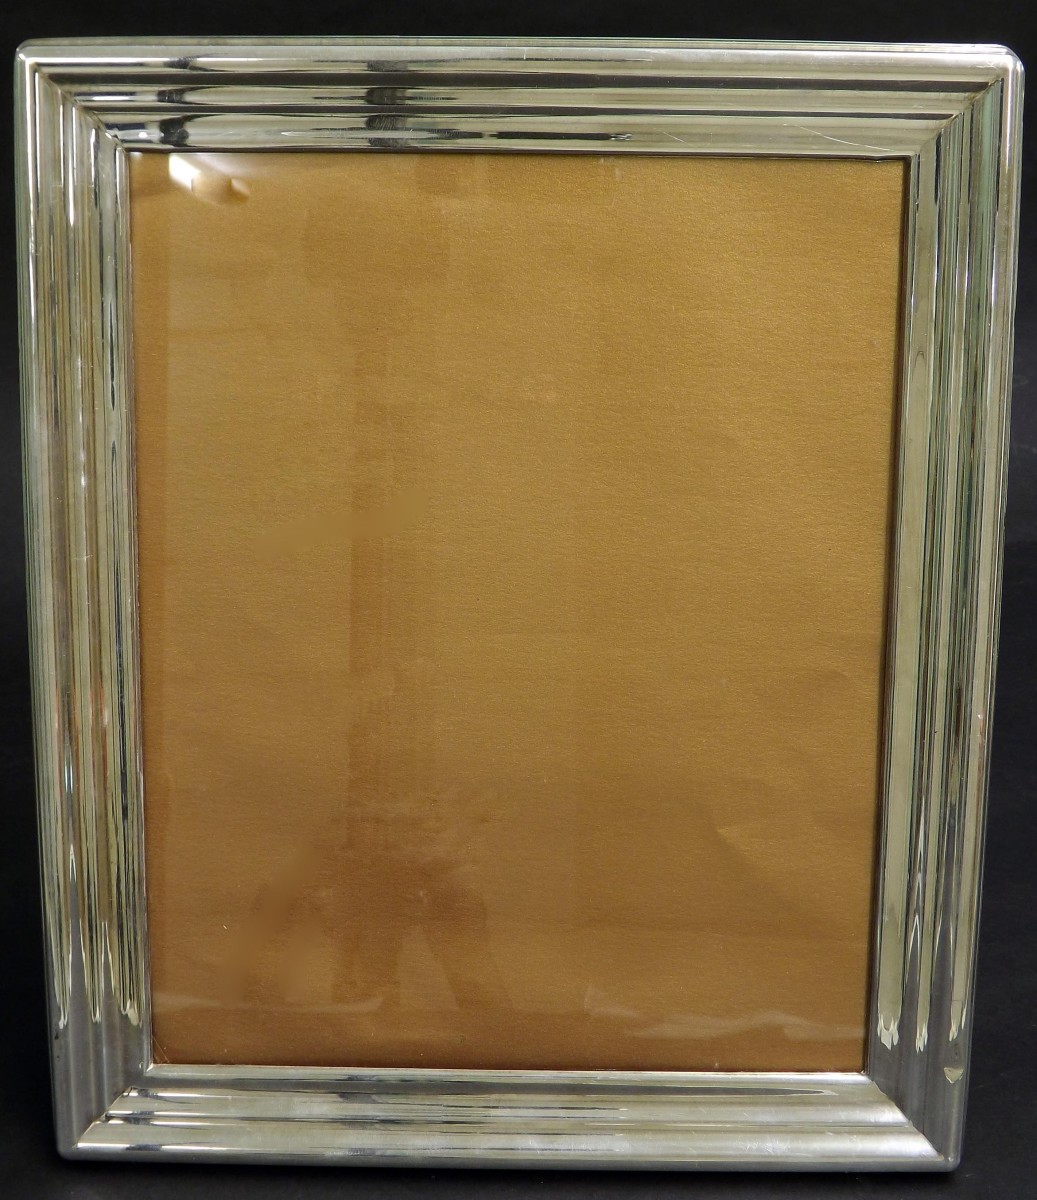 Contemporary silver easel photograph frame, maker Douglas Pell, 12" x 10"